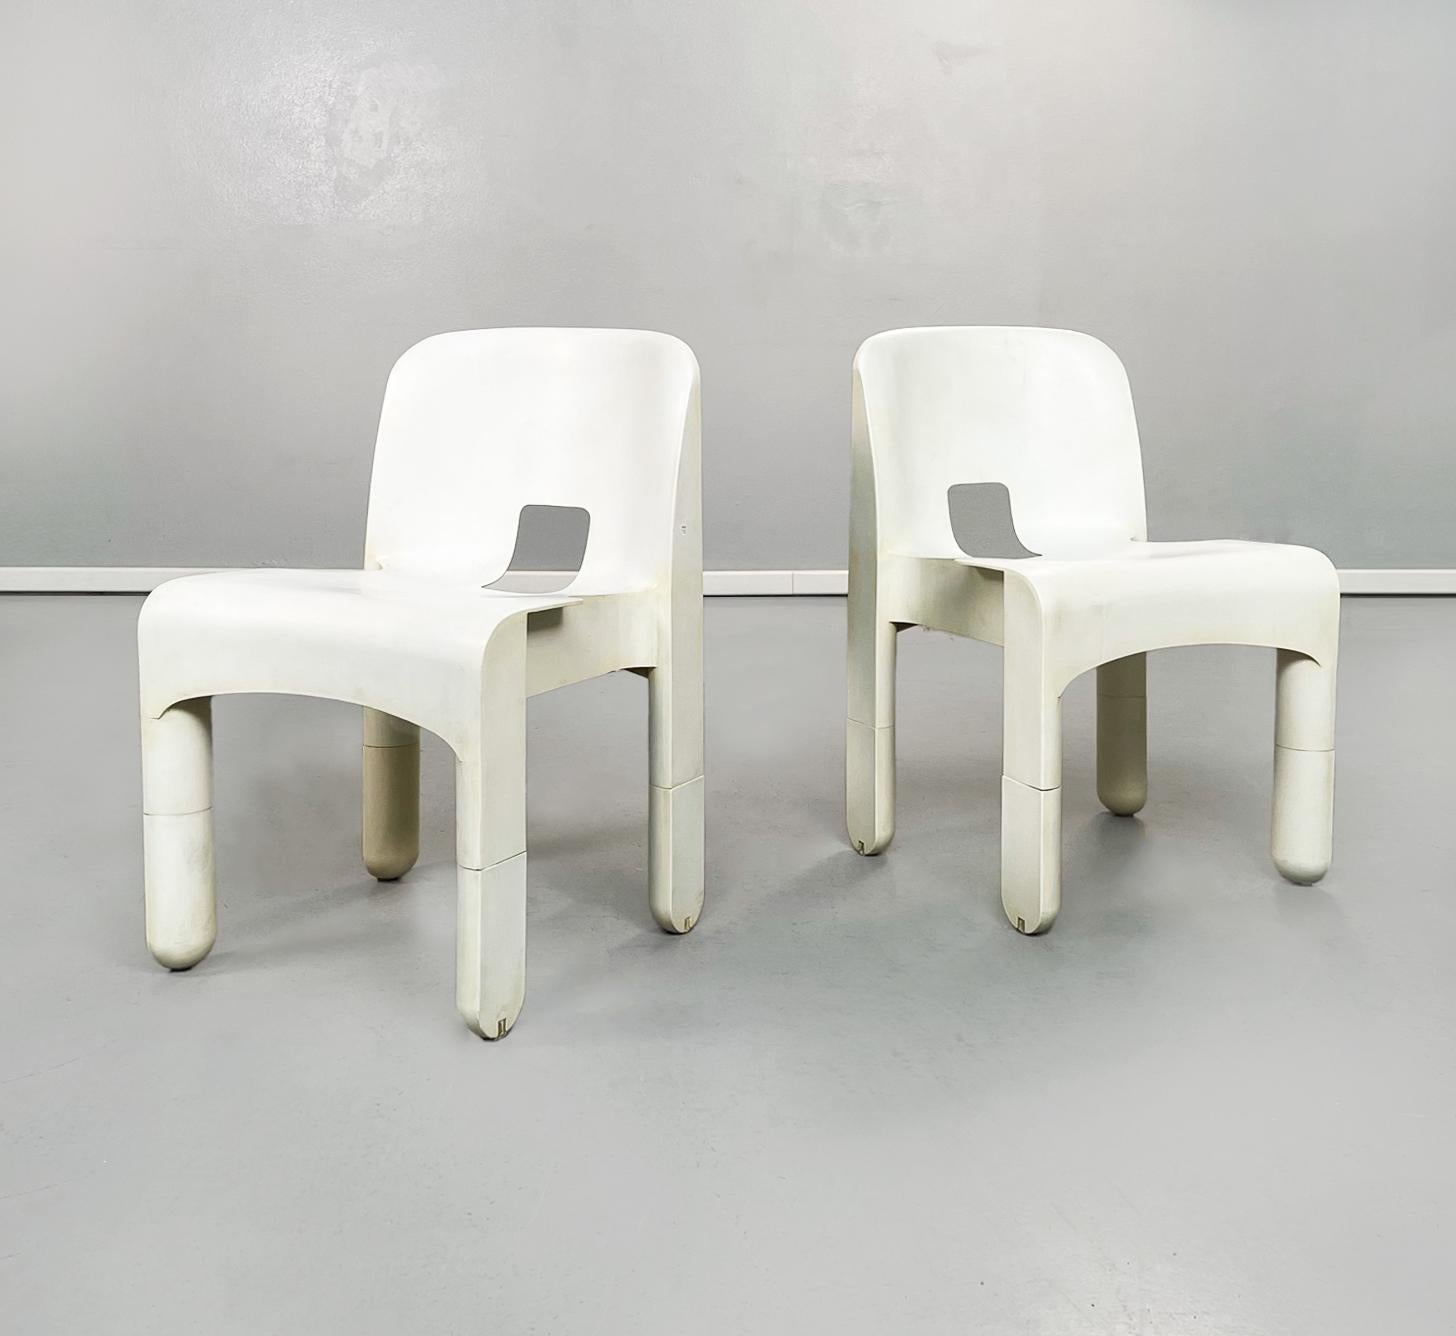 Chaises en plastique blanc 860 de Joe Colombo pour Kartell, 1970
Set de 4 chaises modèle 860, connu aussi comme chaise Universale, en plastique ABS blanc crème. Le siège rectangulaire est doté de deux rabats à l'extérieur. Le dossier, légèrement